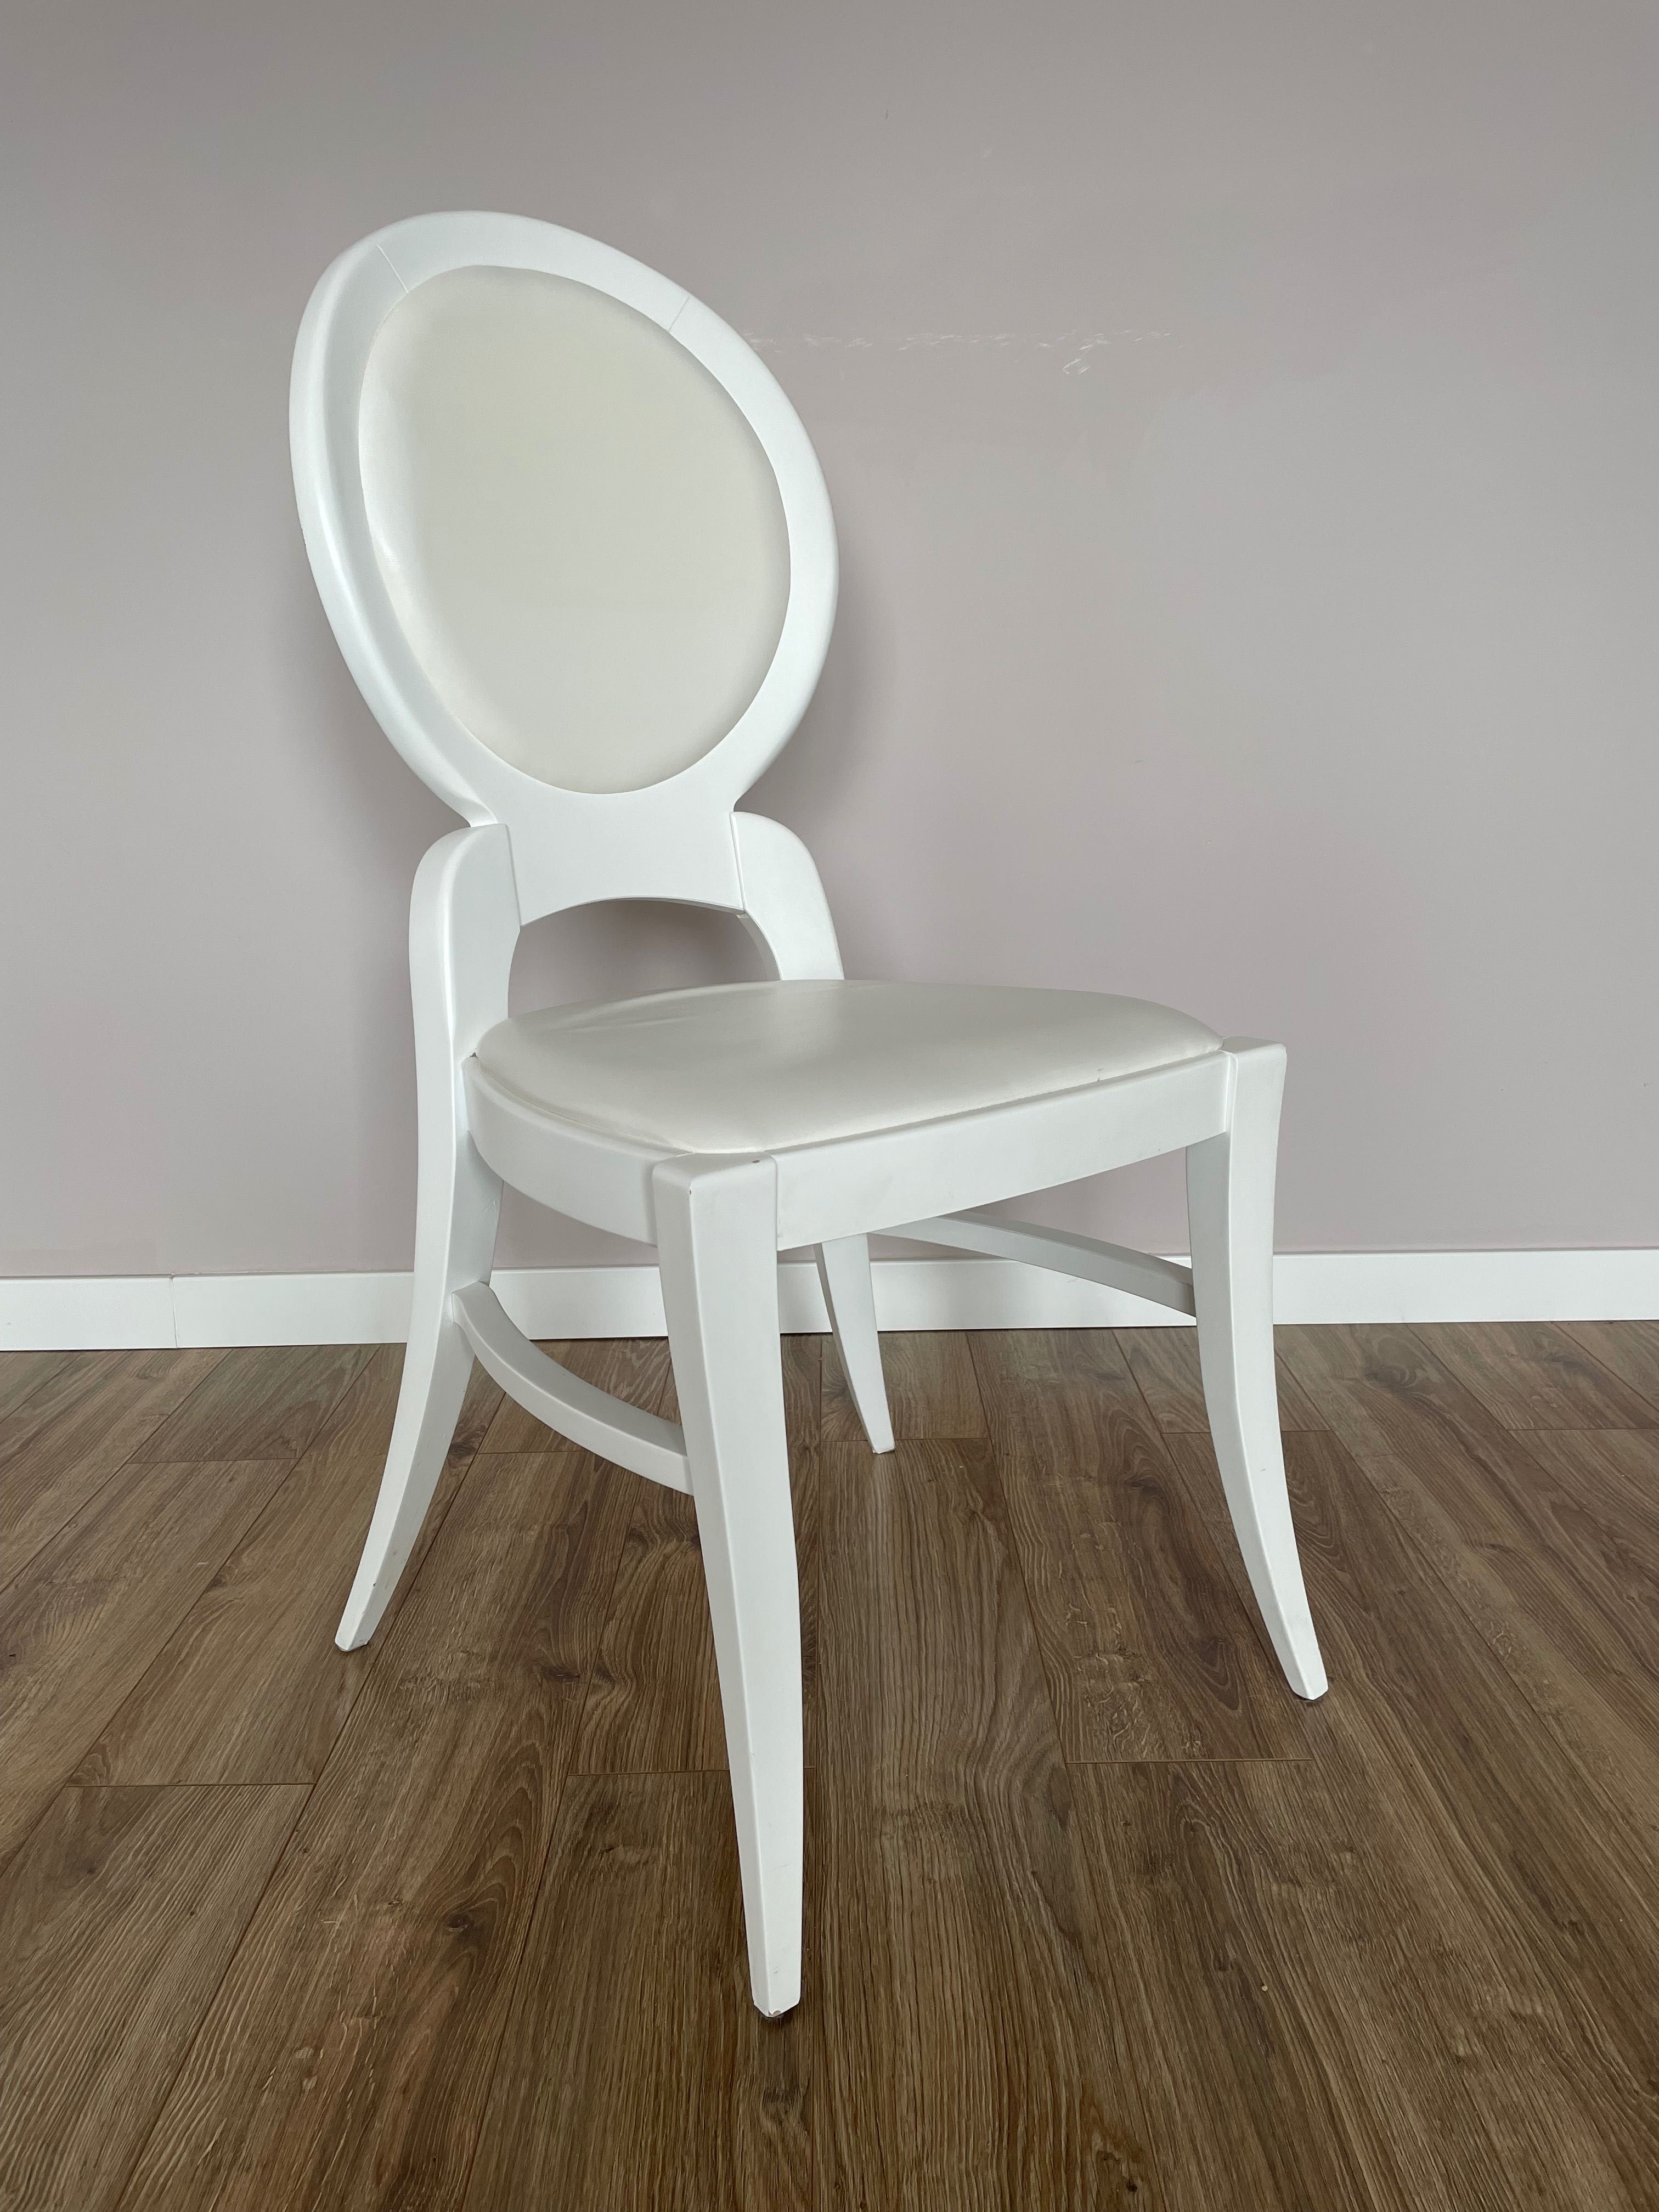 krzesło drewniane białe stylizowane